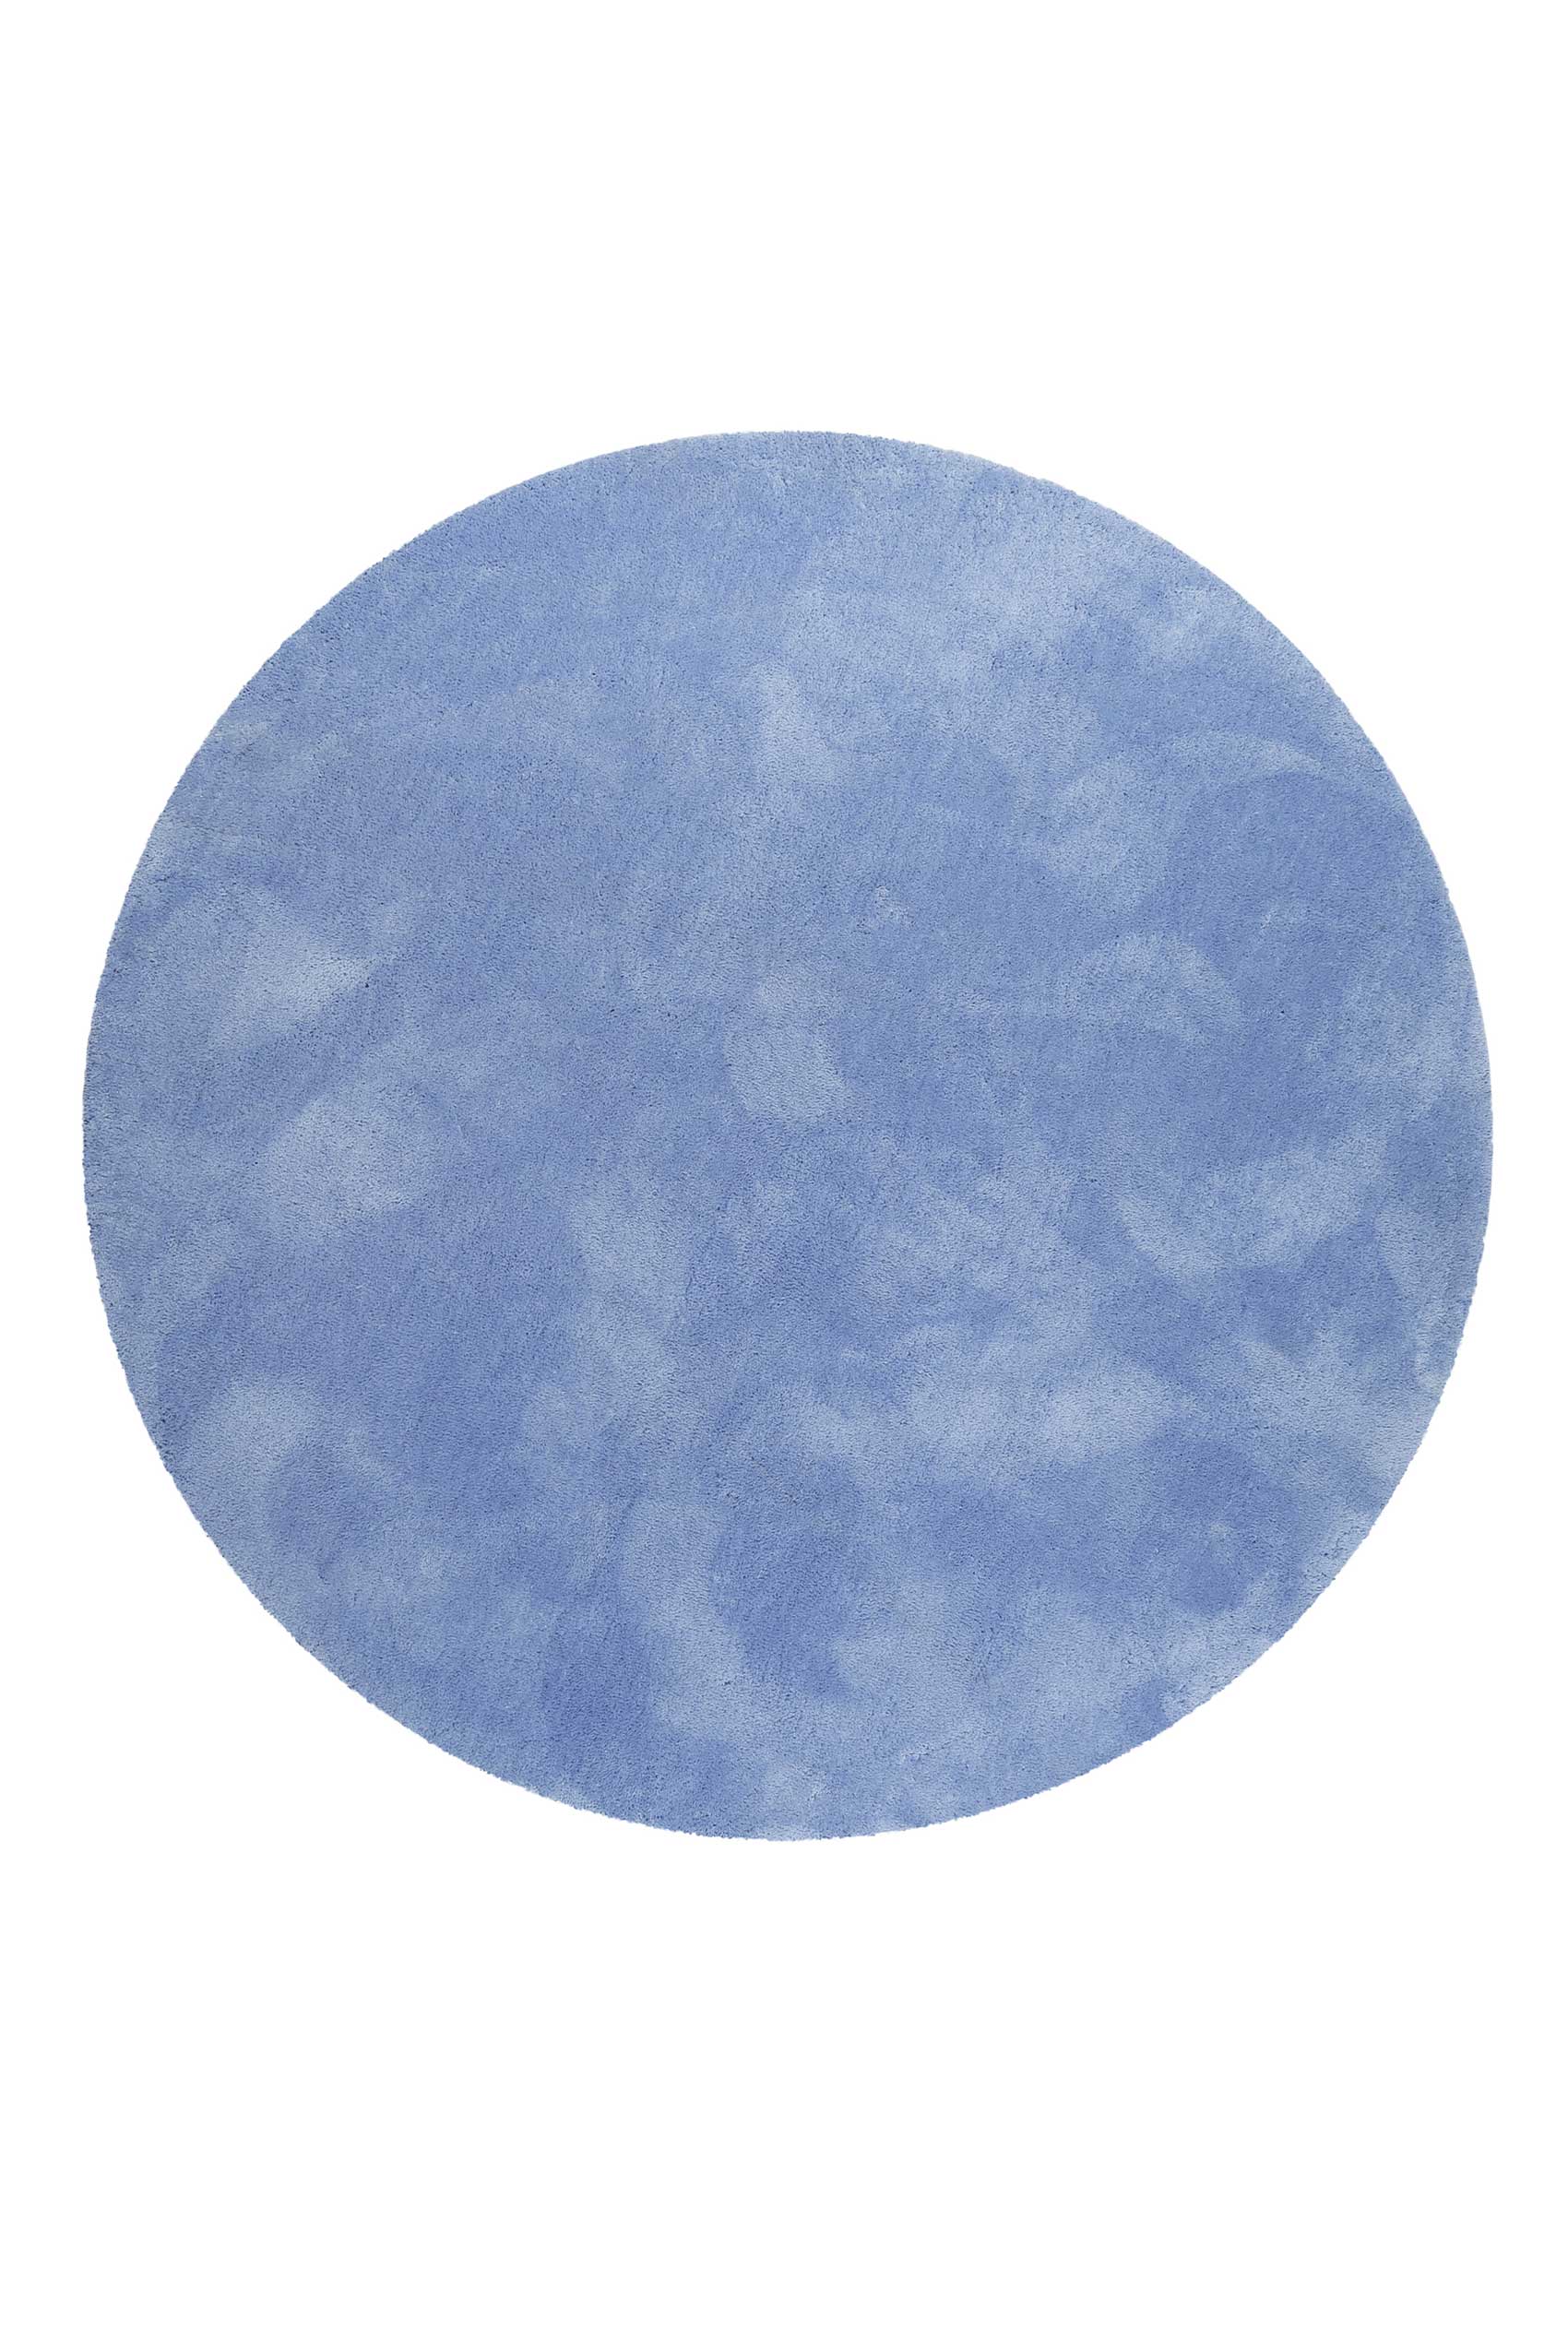 Esprit Teppich Rund Blau Hochflor » Relaxx « - Ansicht 1